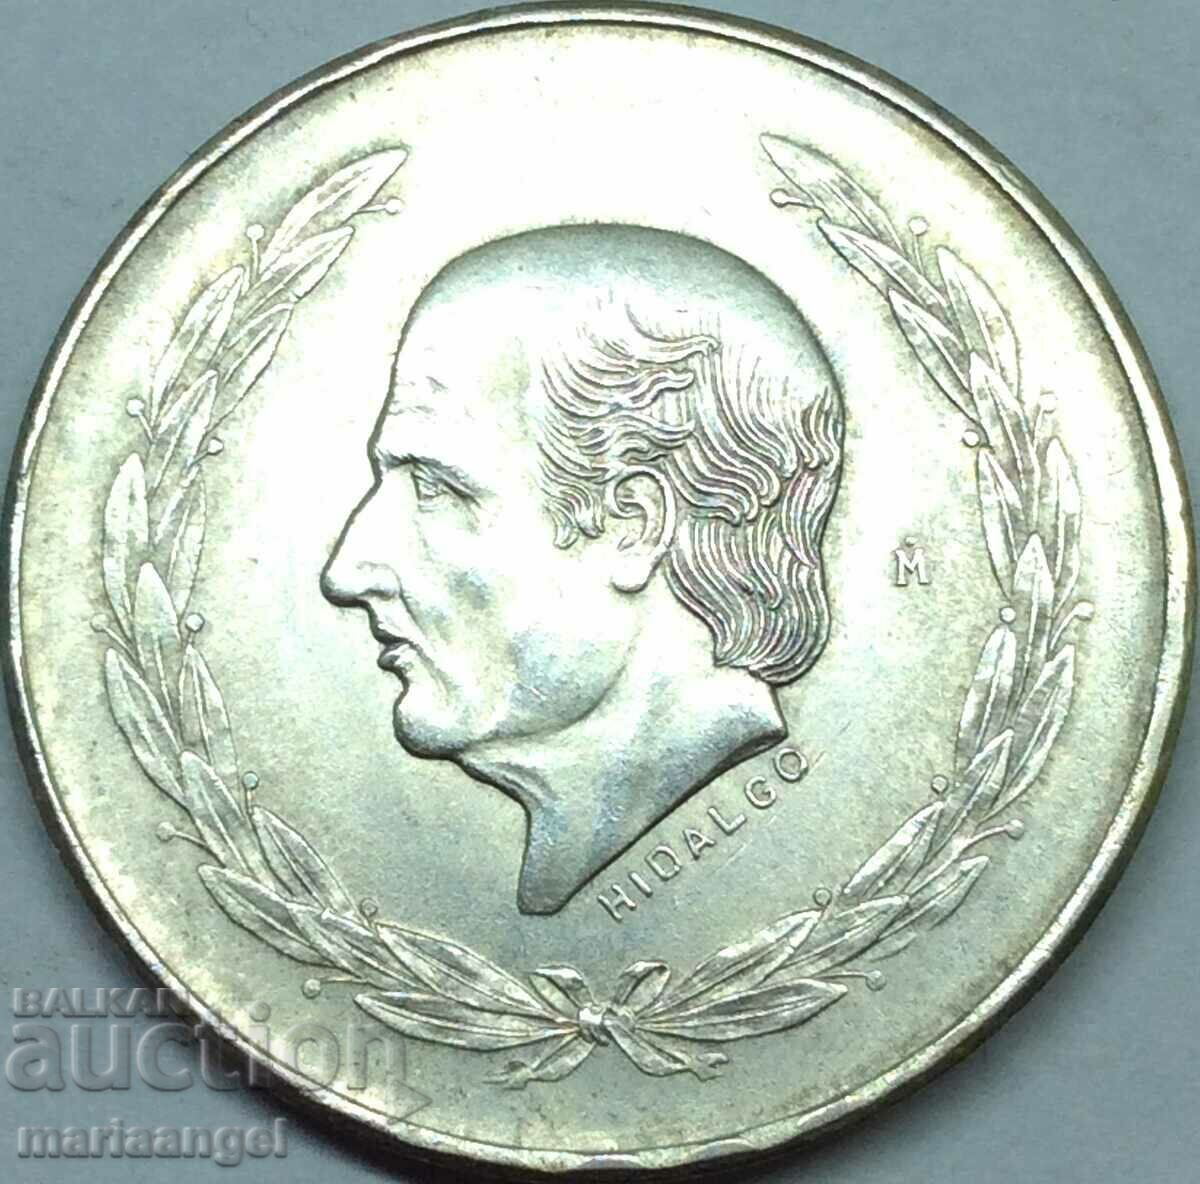 Mexico 5 pesos 1953 27.72g silver